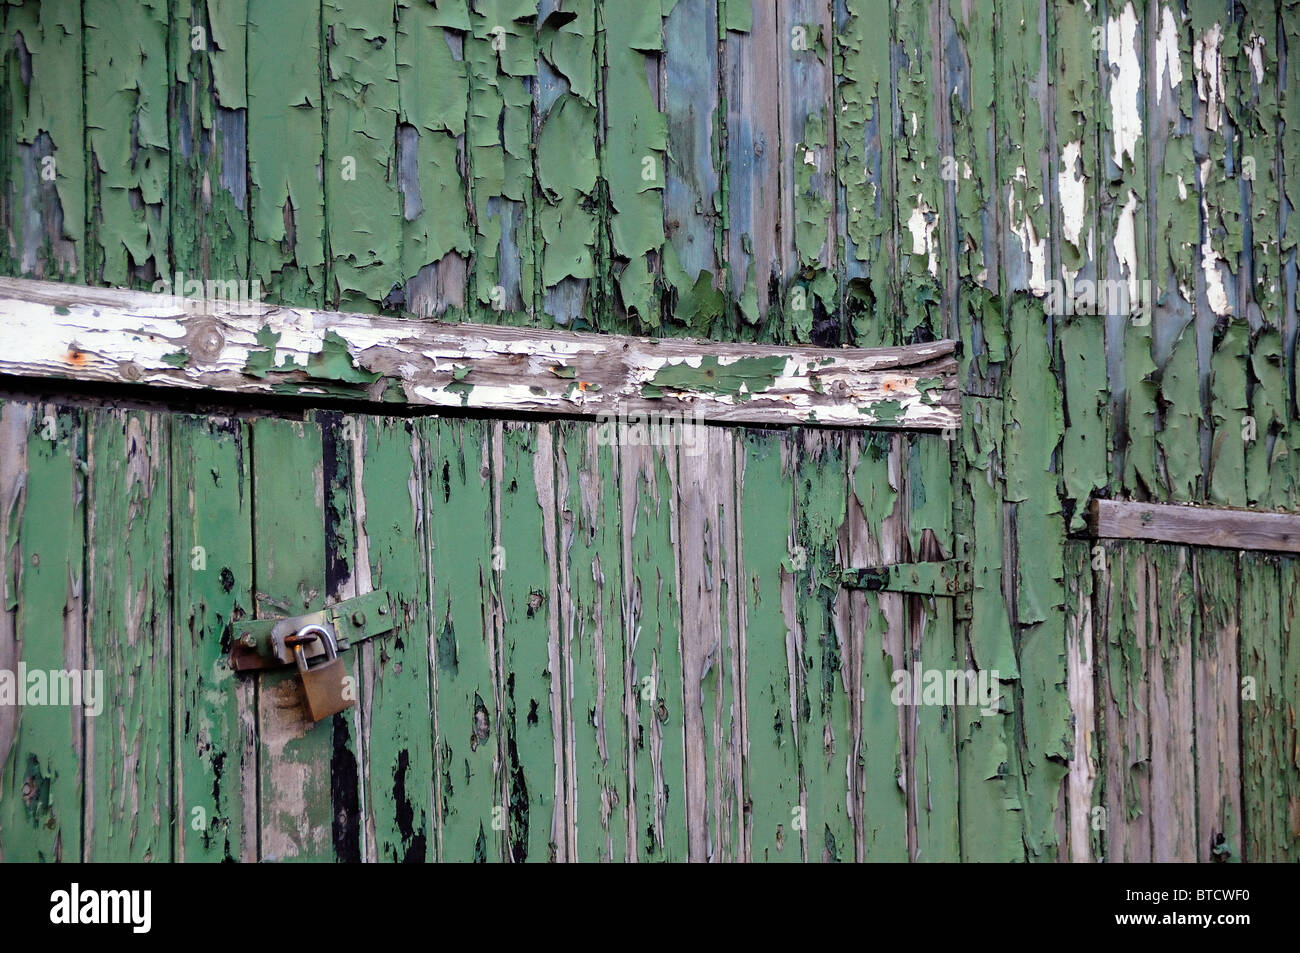 green paint peeling off wooden doors Stock Photo